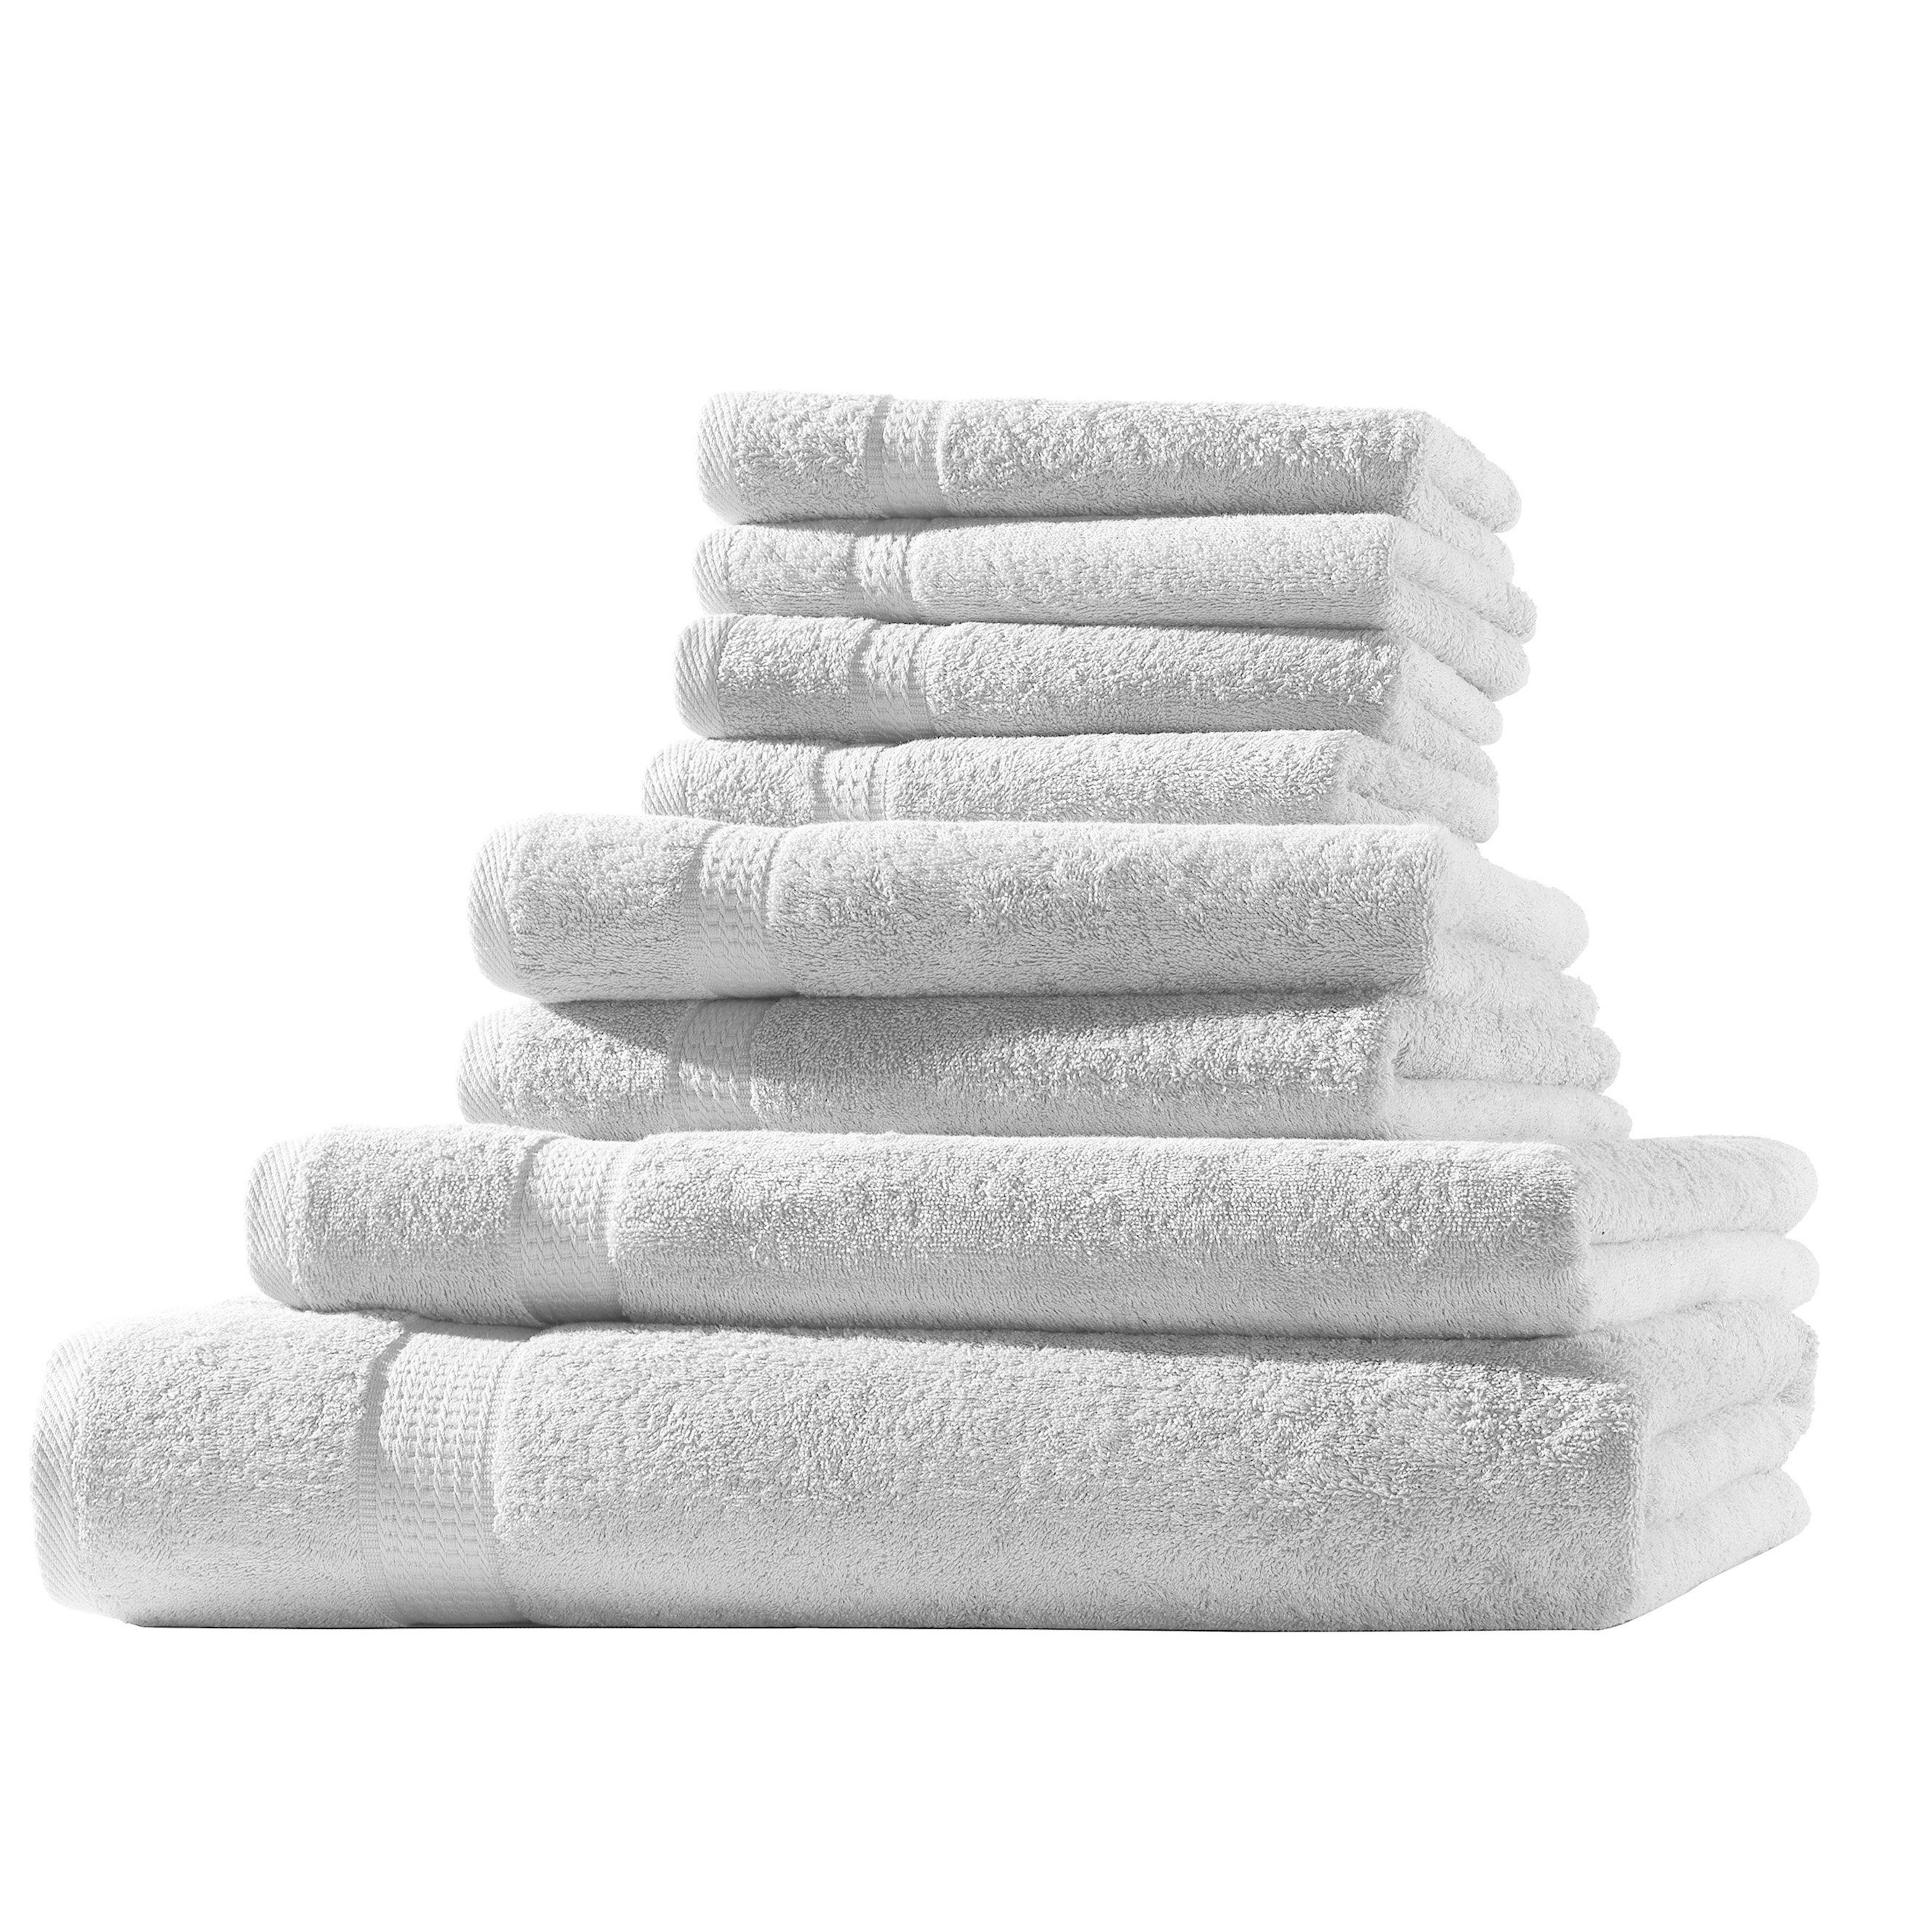 Hometex Premium Textiles Handtuch in Premium Qualität 500 g/m², Feinster Frottier-Stoff 100% Baumwolle, 1x Badetuch + 1 Duschtuch + 2 Handtuch + 4 Gästetuch, Kuschelig weich, saugfähig, Extra schwere, flauschige Hotel-Qualität